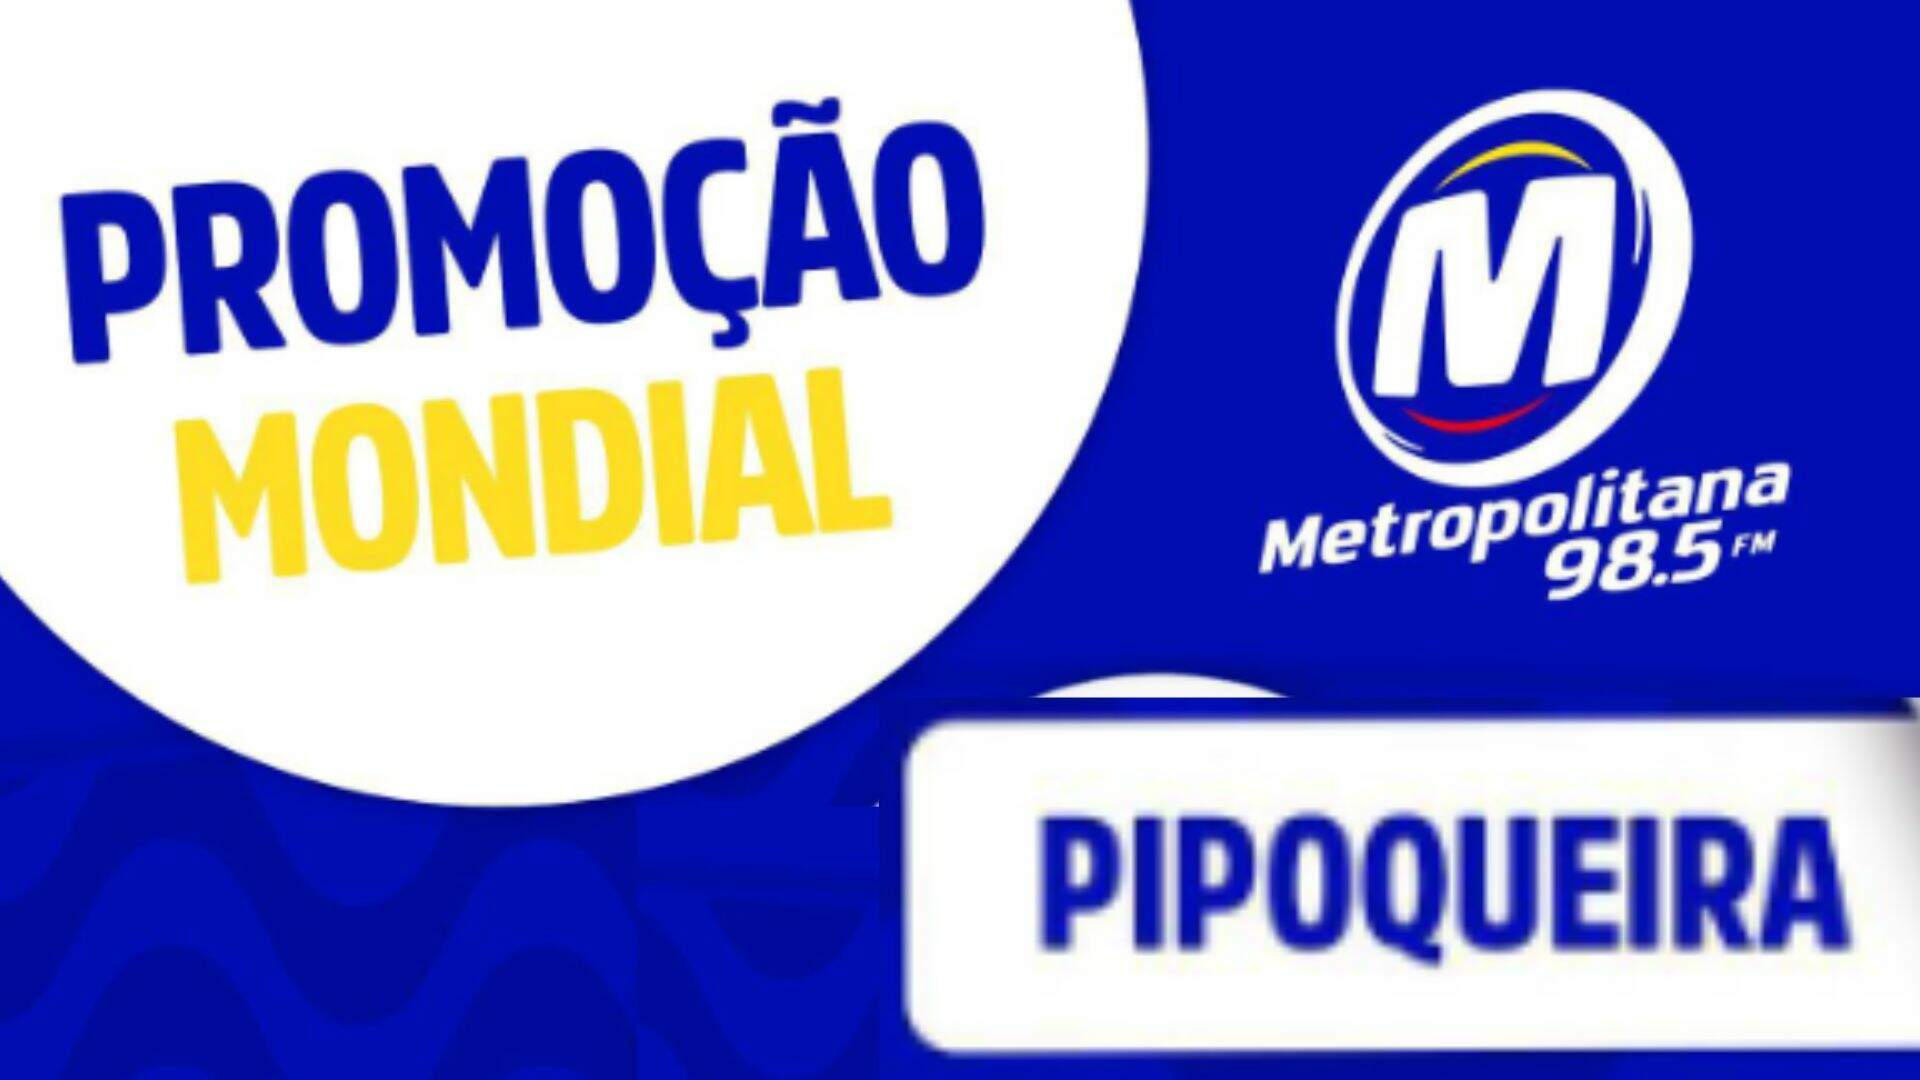 [ENCERRADA] Promoção: PIPOQUEIRA MONDIAL NA METROPOLITANA FM - Metropolitana FM